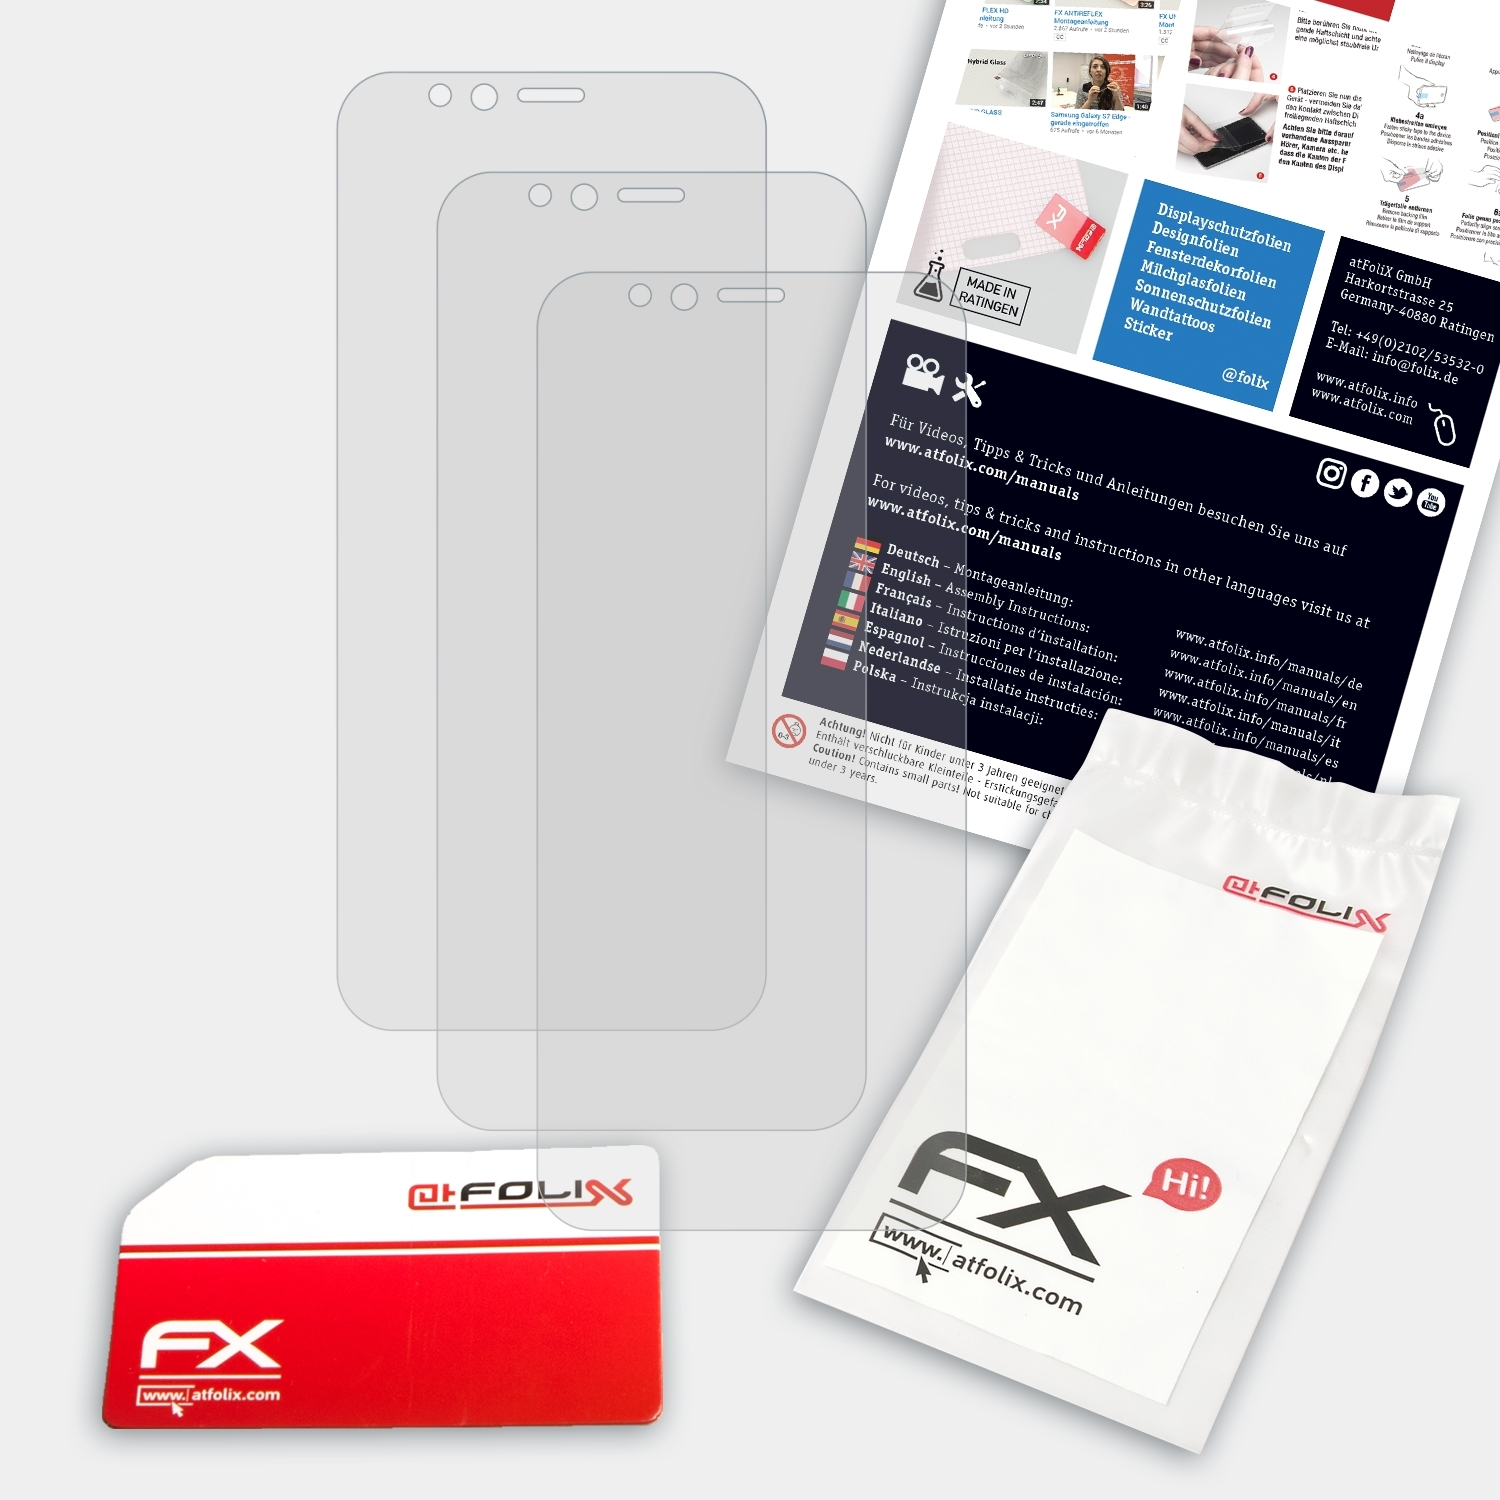 Displayschutz(für Play) FX-Antireflex K5 3x ATFOLIX Lenovo